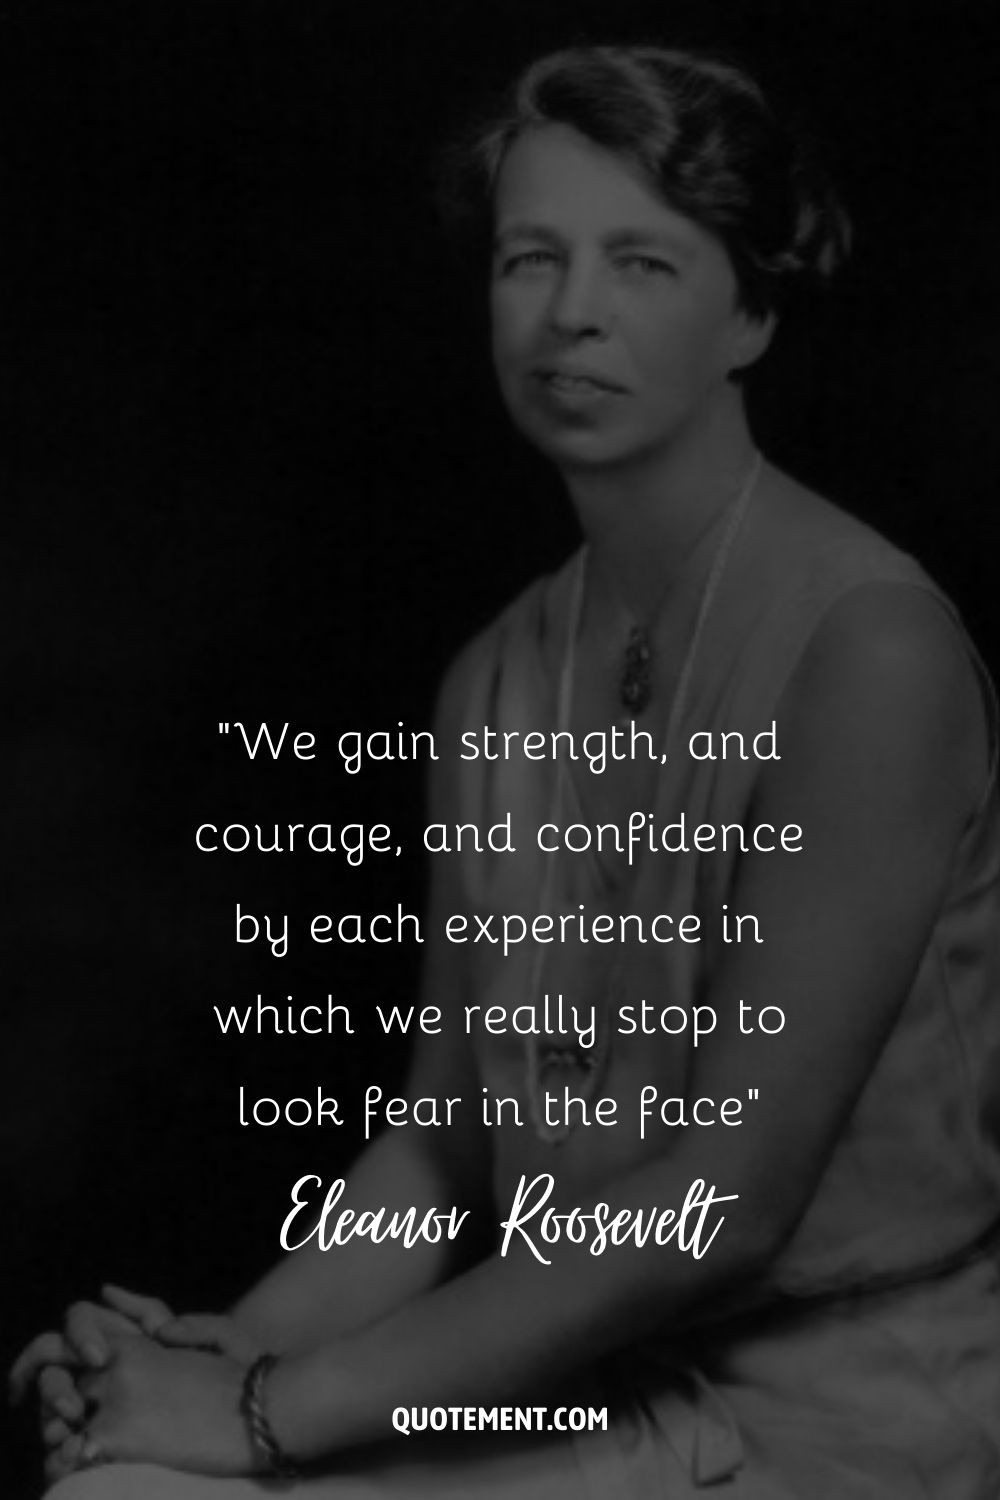 Imagen de Eleanor Roosevelt representando una cita sobre el valor y el miedo.